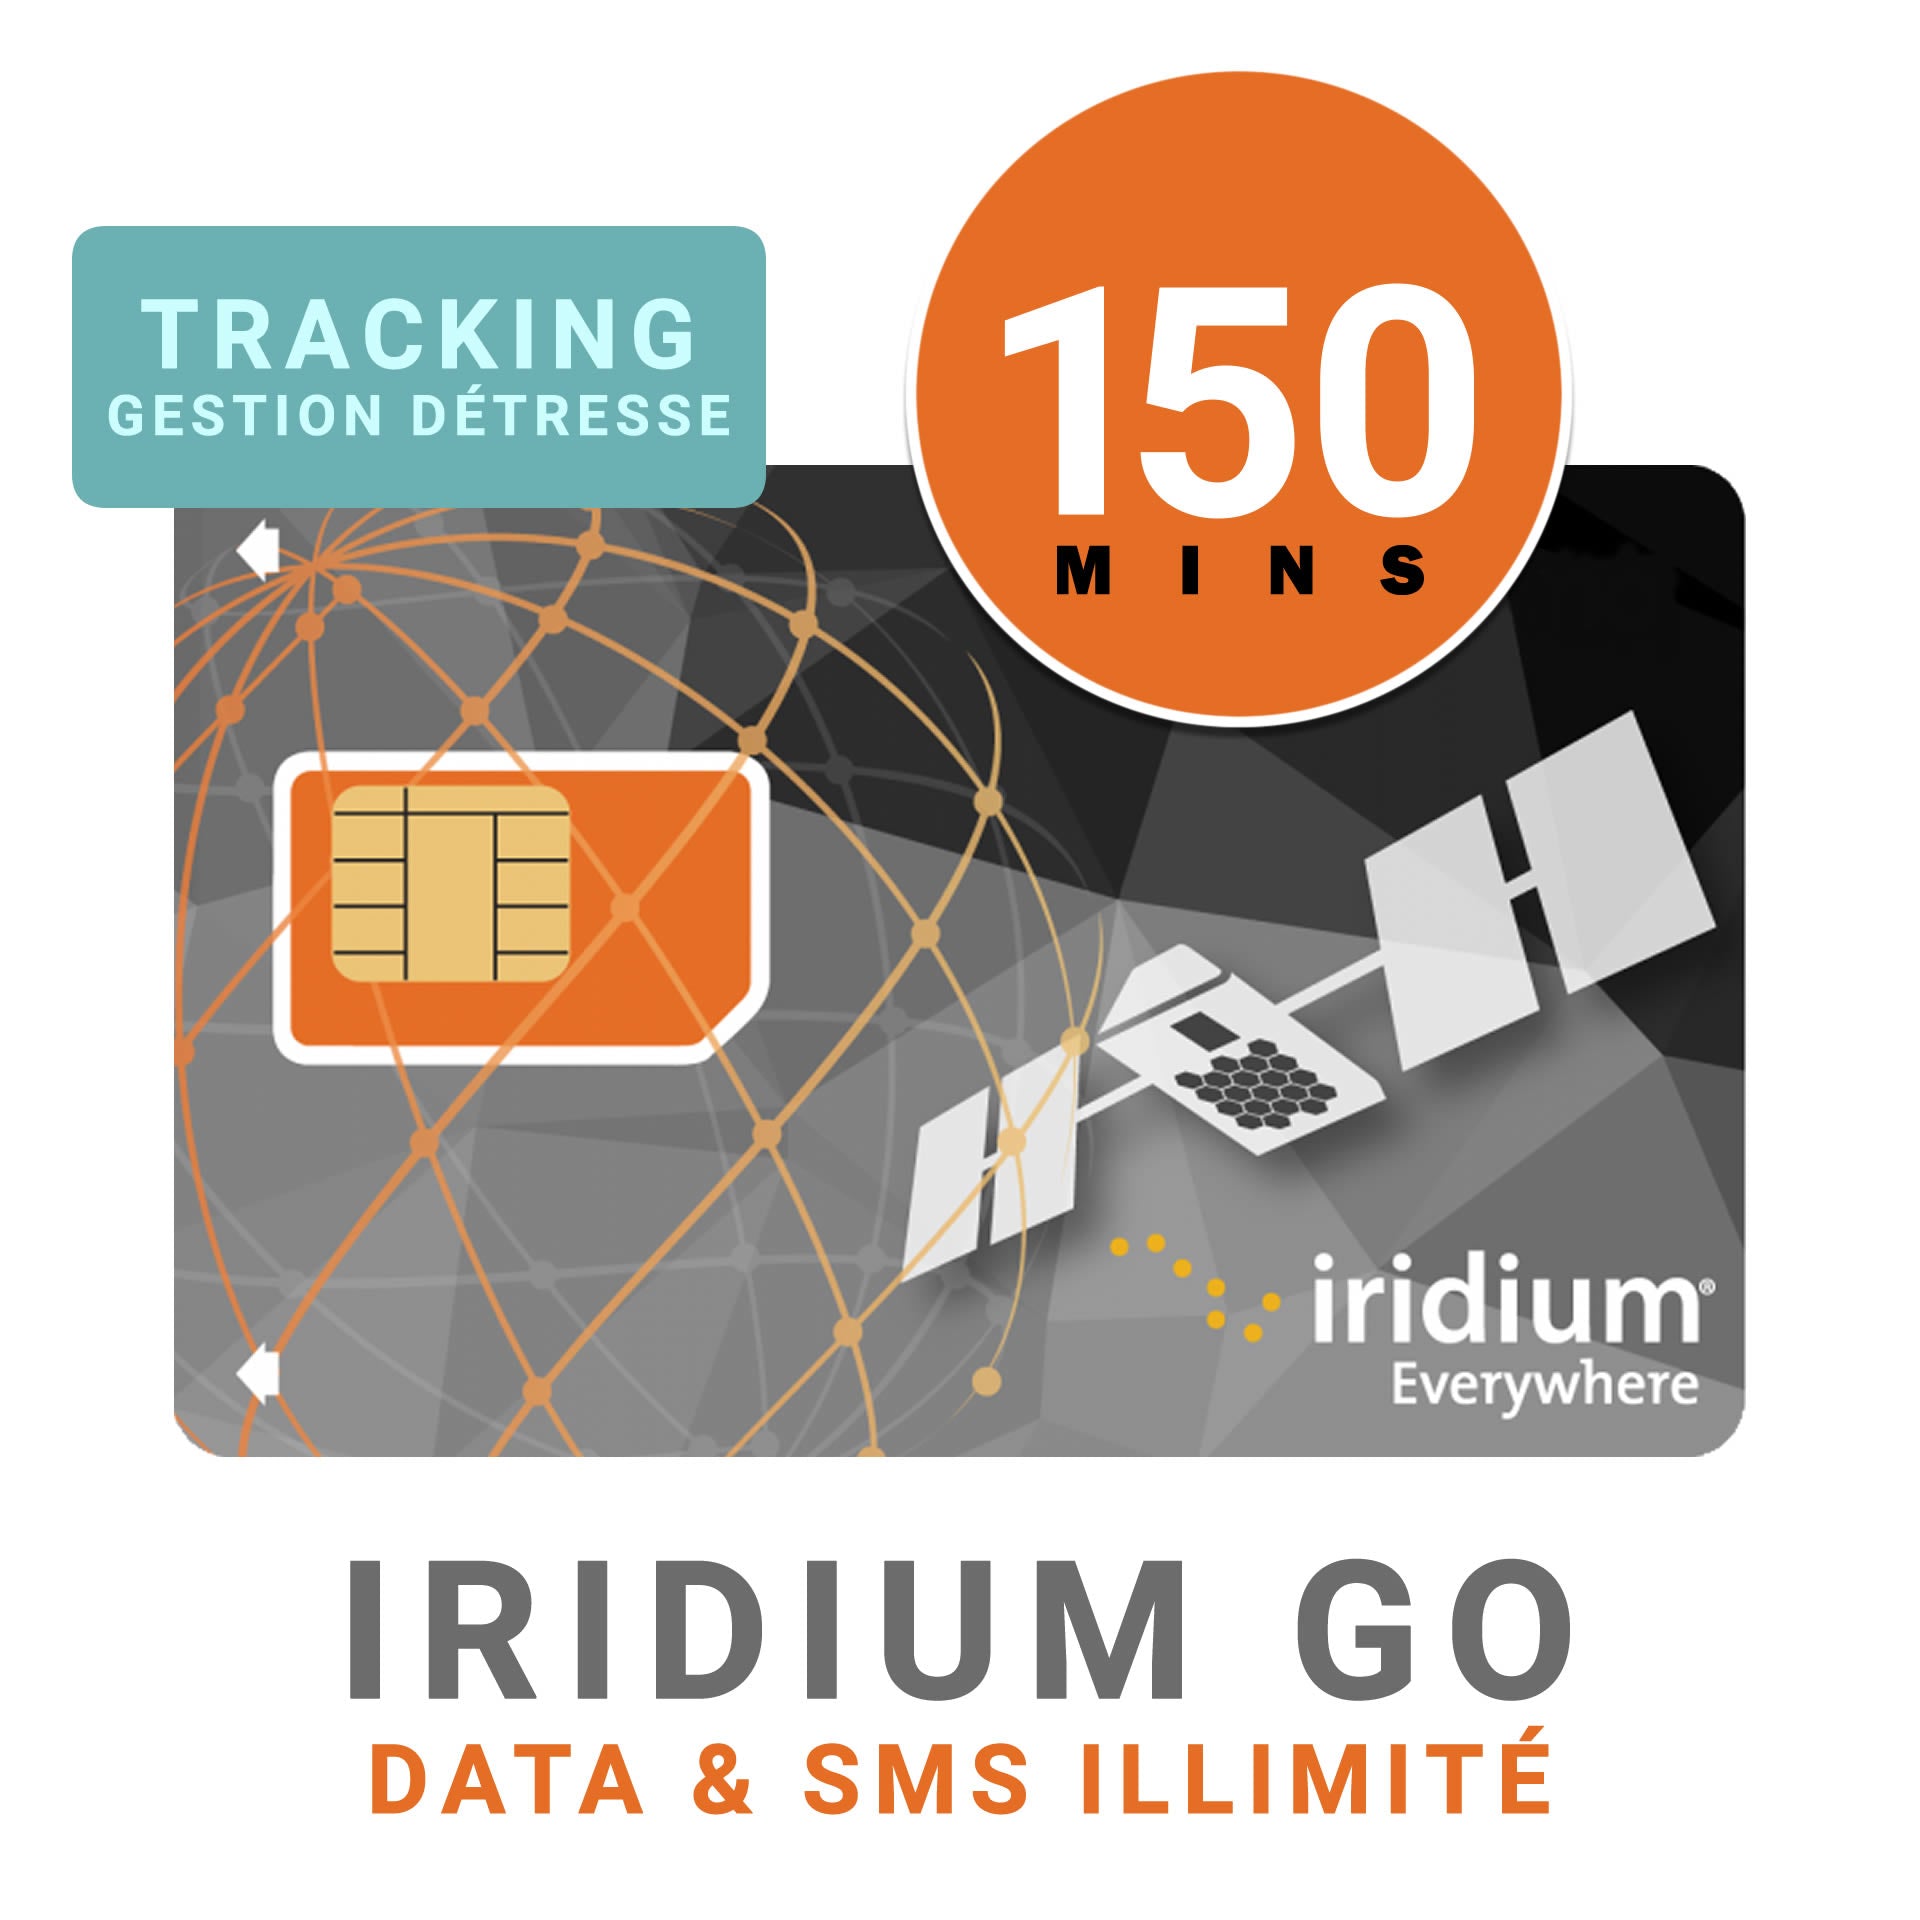 Abbonamento di 45 giorni - IRIDIUM GO DATA - Illimitato + 225 MIN DI VOCE + Tracciamento